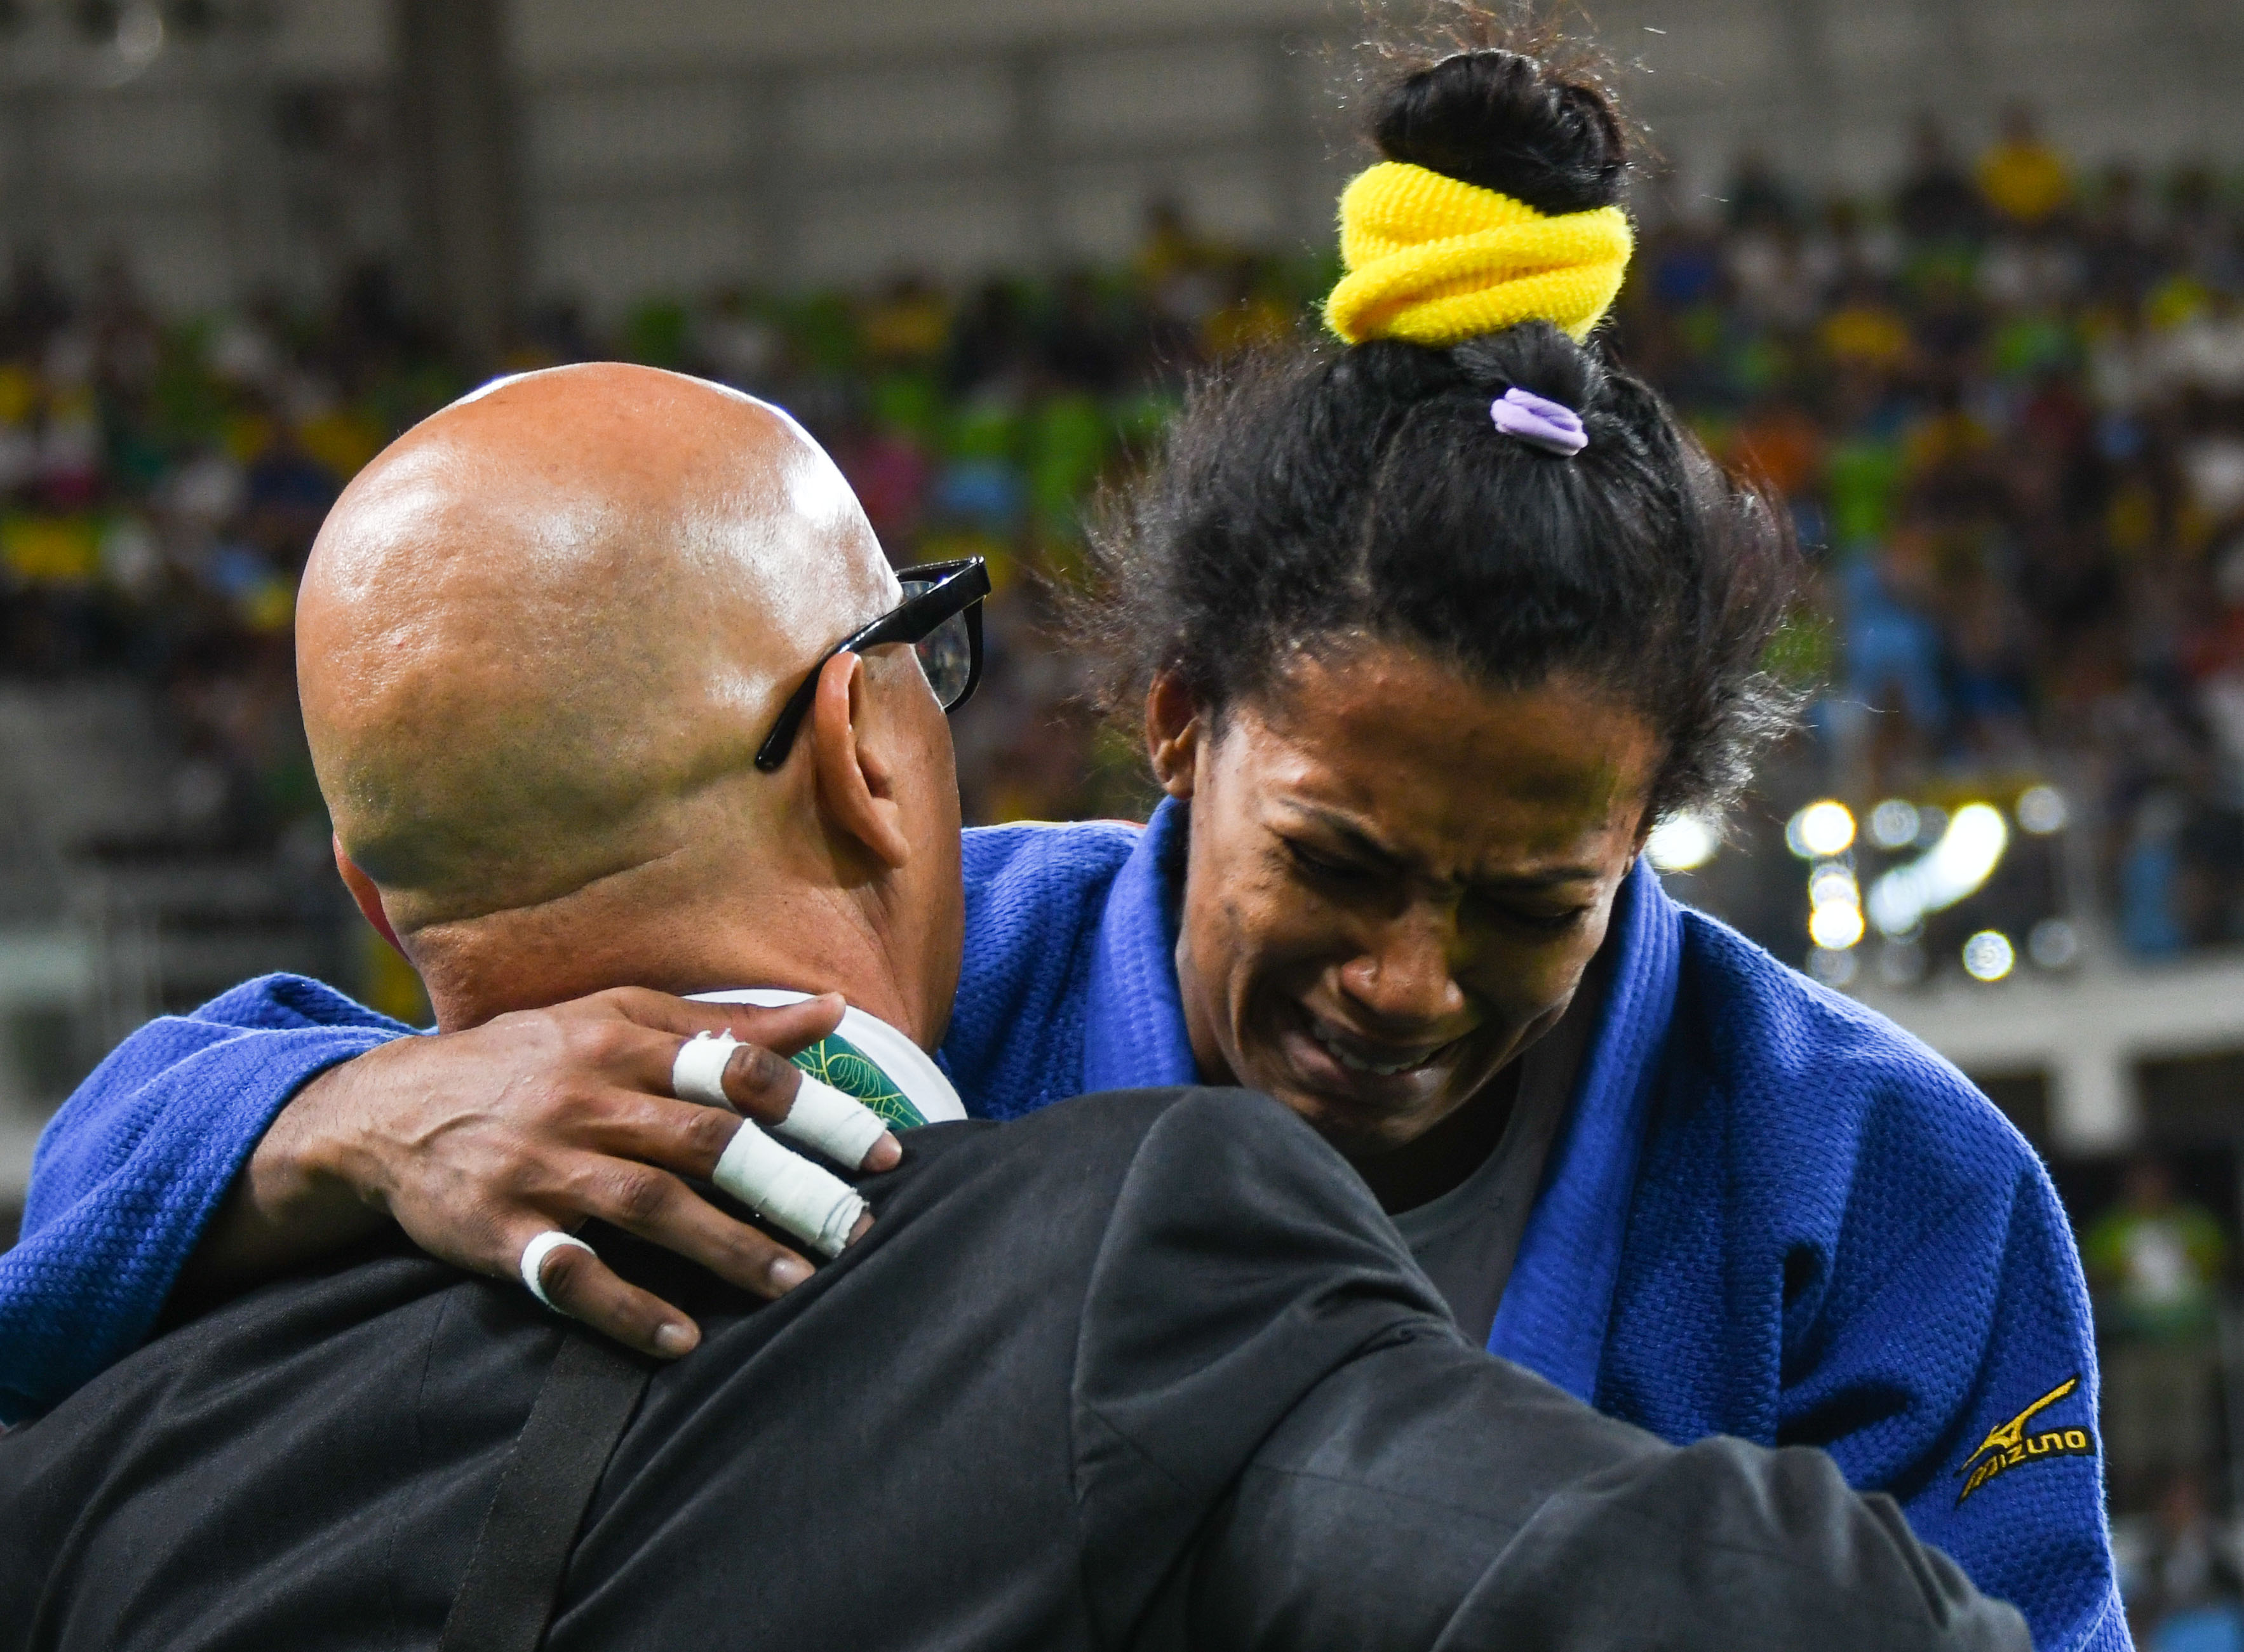 La cubana Dayaris Mestre , de la división de 48 Kg, llora tras perder el bronce olímpico en Rio de Janeiro. ACN FOTO/Marcelino VÁZQUEZ HERNÁNDEZ